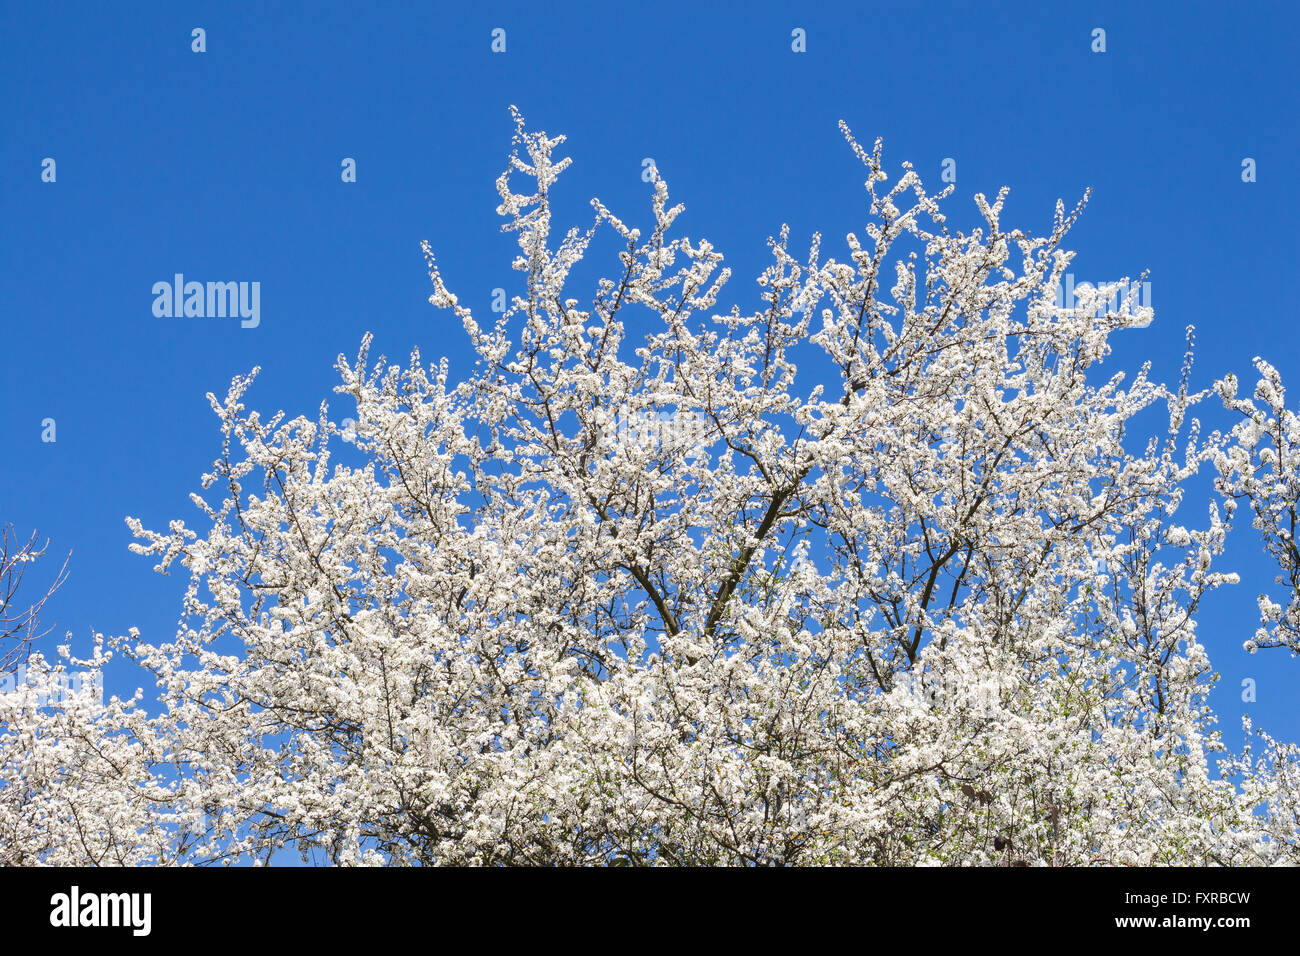 Corona della fioritura frutti selvatici di albero in primavera. Bianco Fiori di piccole dimensioni e luminoso cielo blu senza una nuvola. Foto Stock